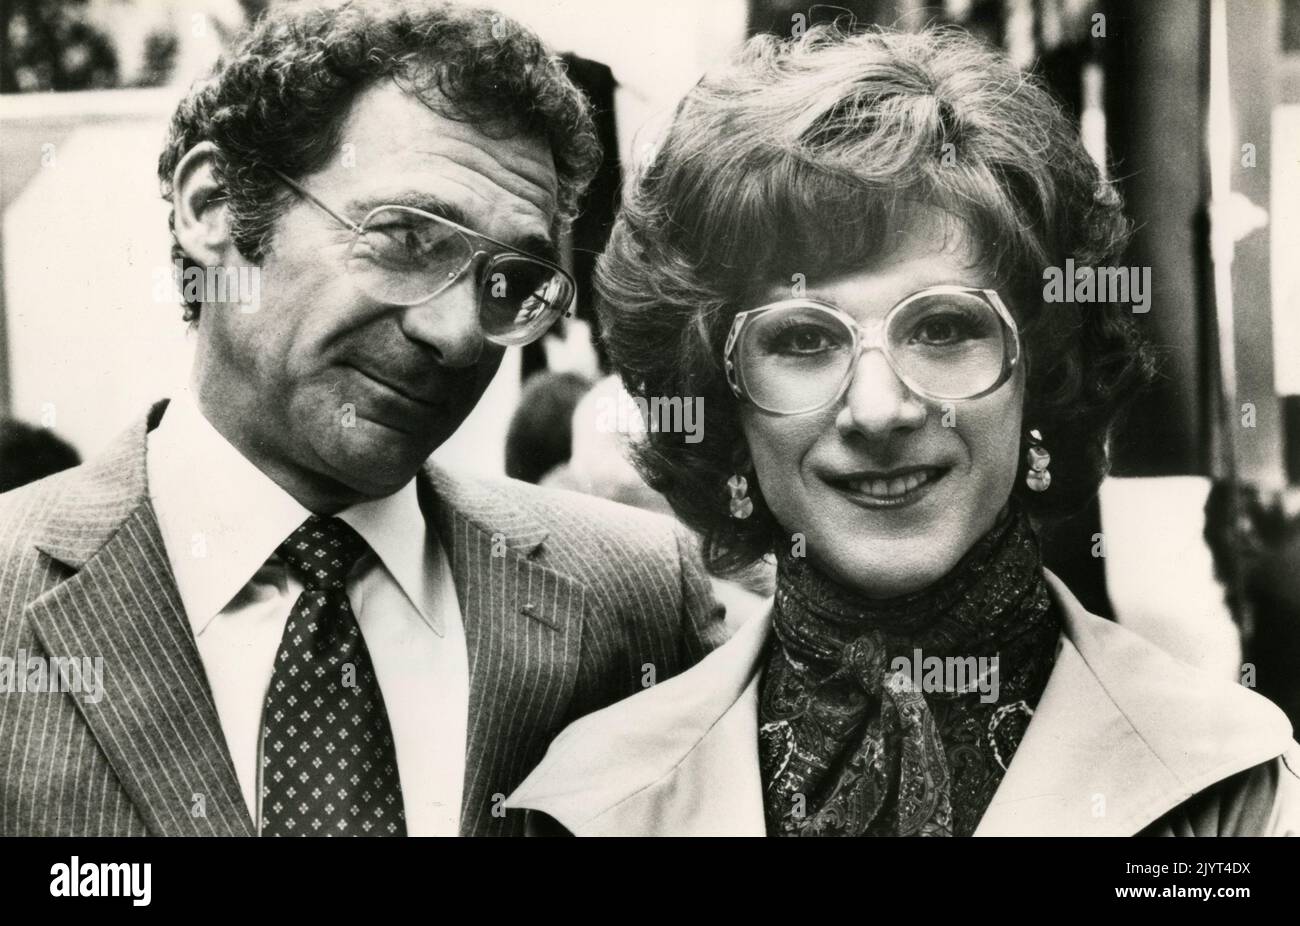 Les acteurs américains Sydney Pollack et Dustin Hoffman dans le film Tootsie, USA 1982 Banque D'Images